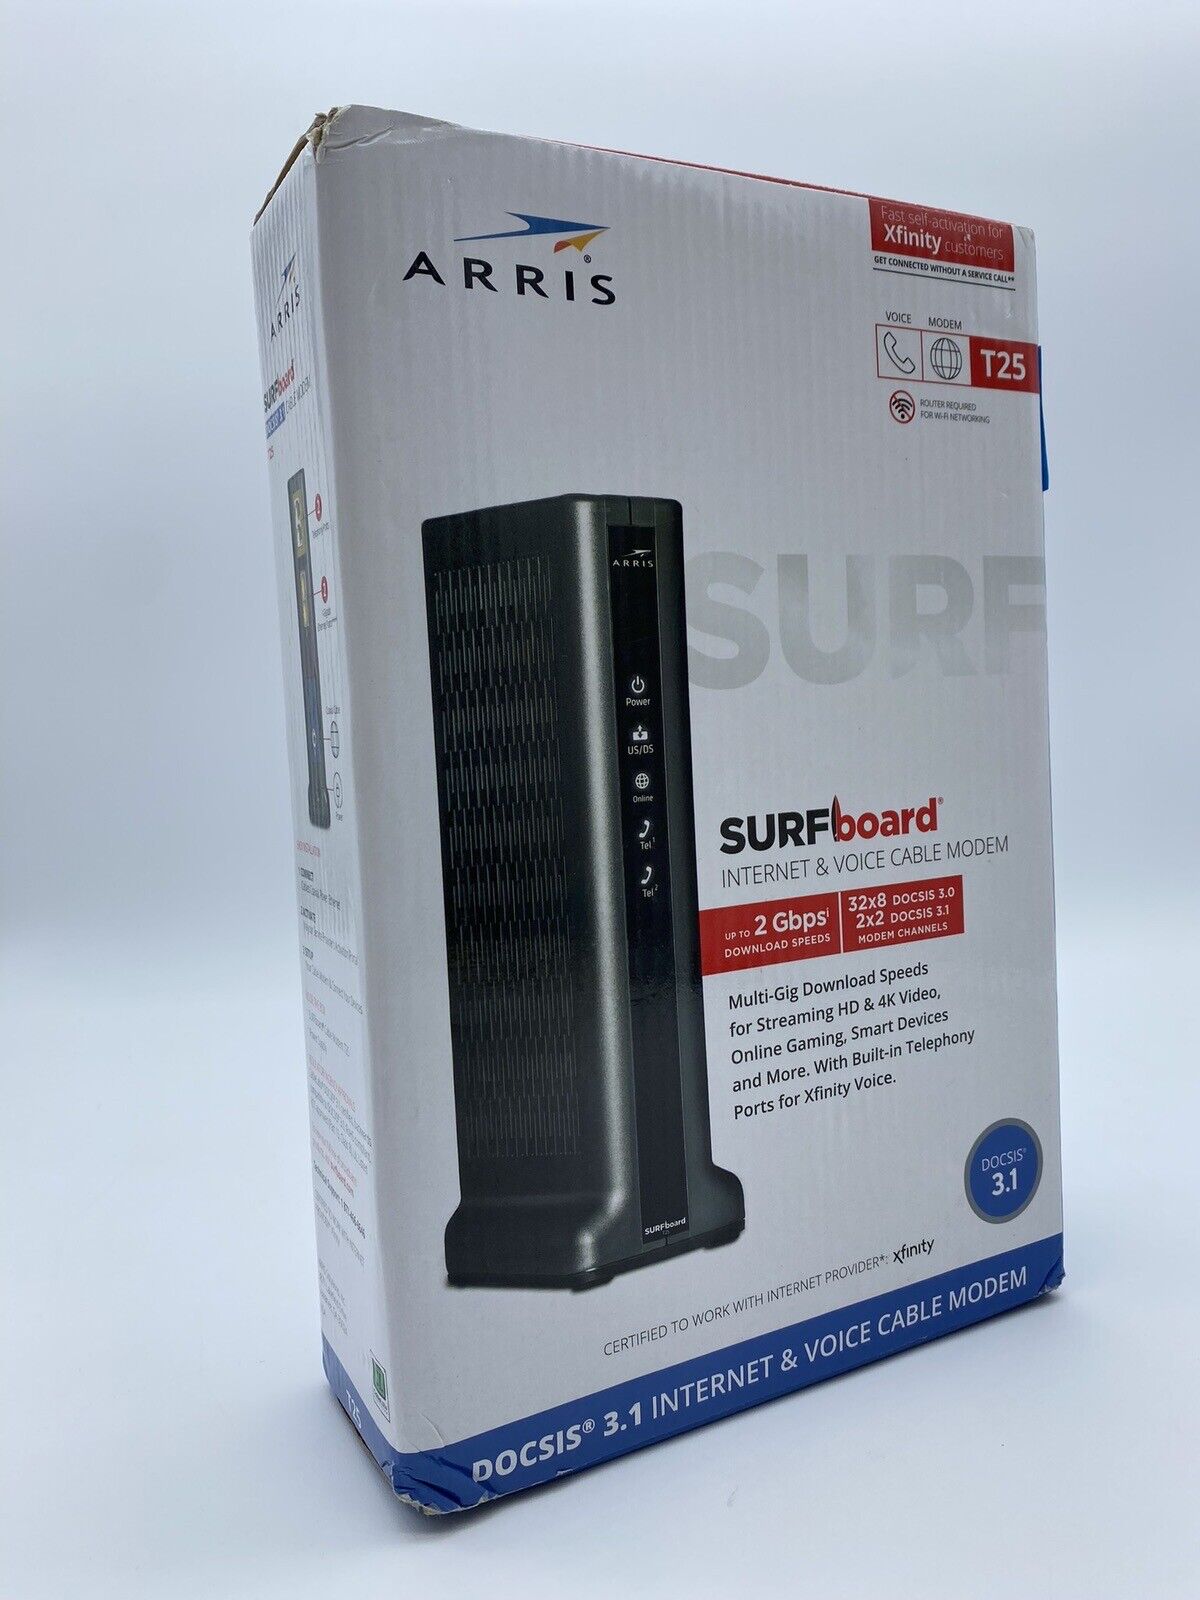 ARRIS Surfboard Docsis T25 Cable Modem Internet & Voice 0R12450#3